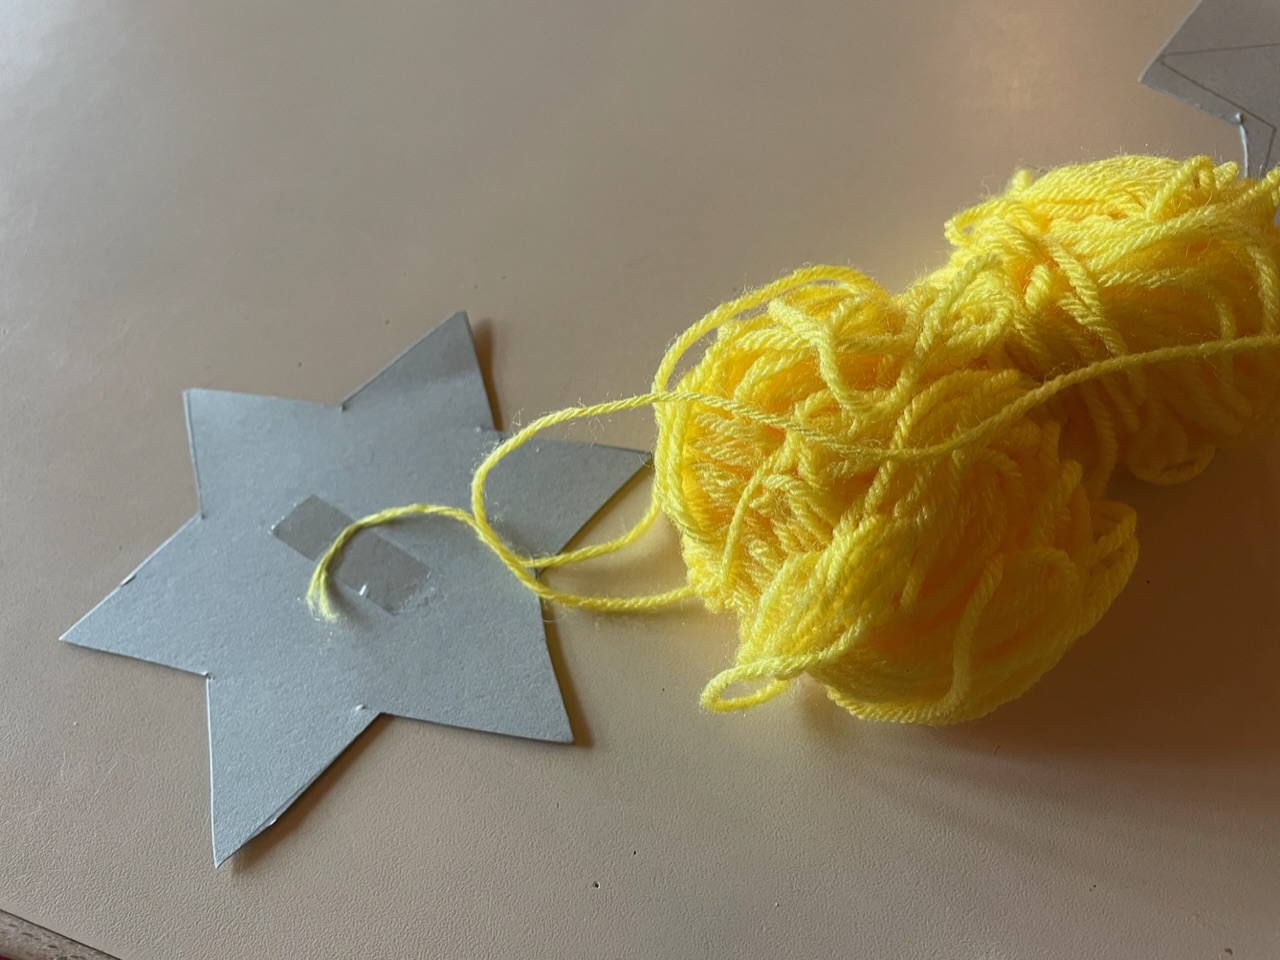 Bild zum Schritt 3 für das Bastel- und DIY-Abenteuer für Kinder: 'Nehmt gelbe Wolle und klebt den Fadenanfang mit einem Klebestreifen...'